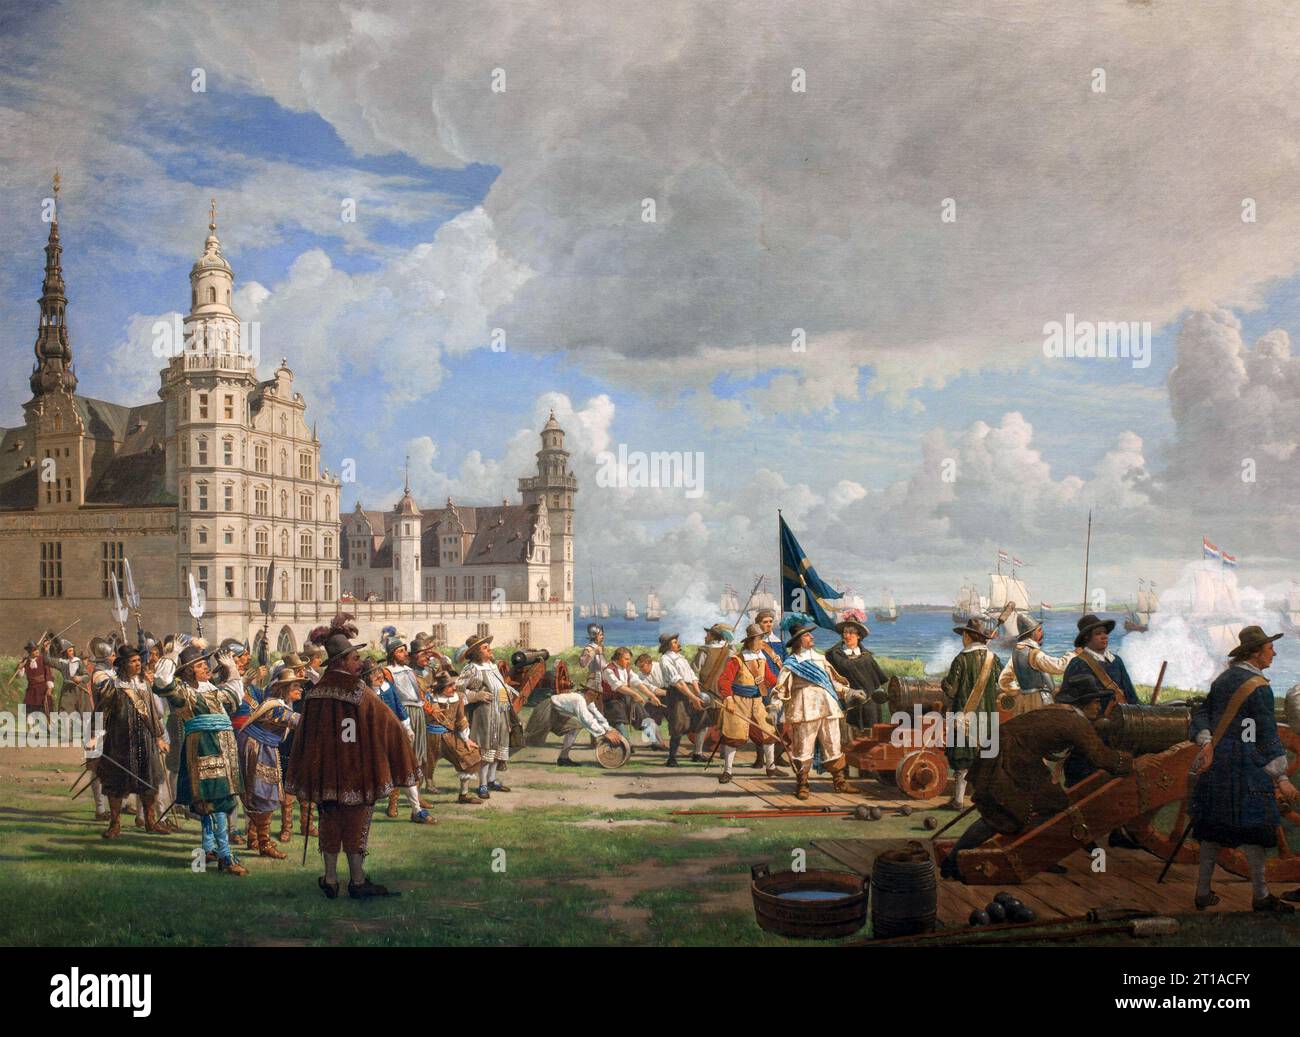 BATTLE OF THE SOUND 8. NOVEMBER 1658. Die holländische Flotte kommt am Schloss Kronborg vorbei, beobachtet von König Karl X. Gustav von Schweden, um Kopenhagen zu entlasten. Gemälde von Frederik Lund (1872) Stockfoto